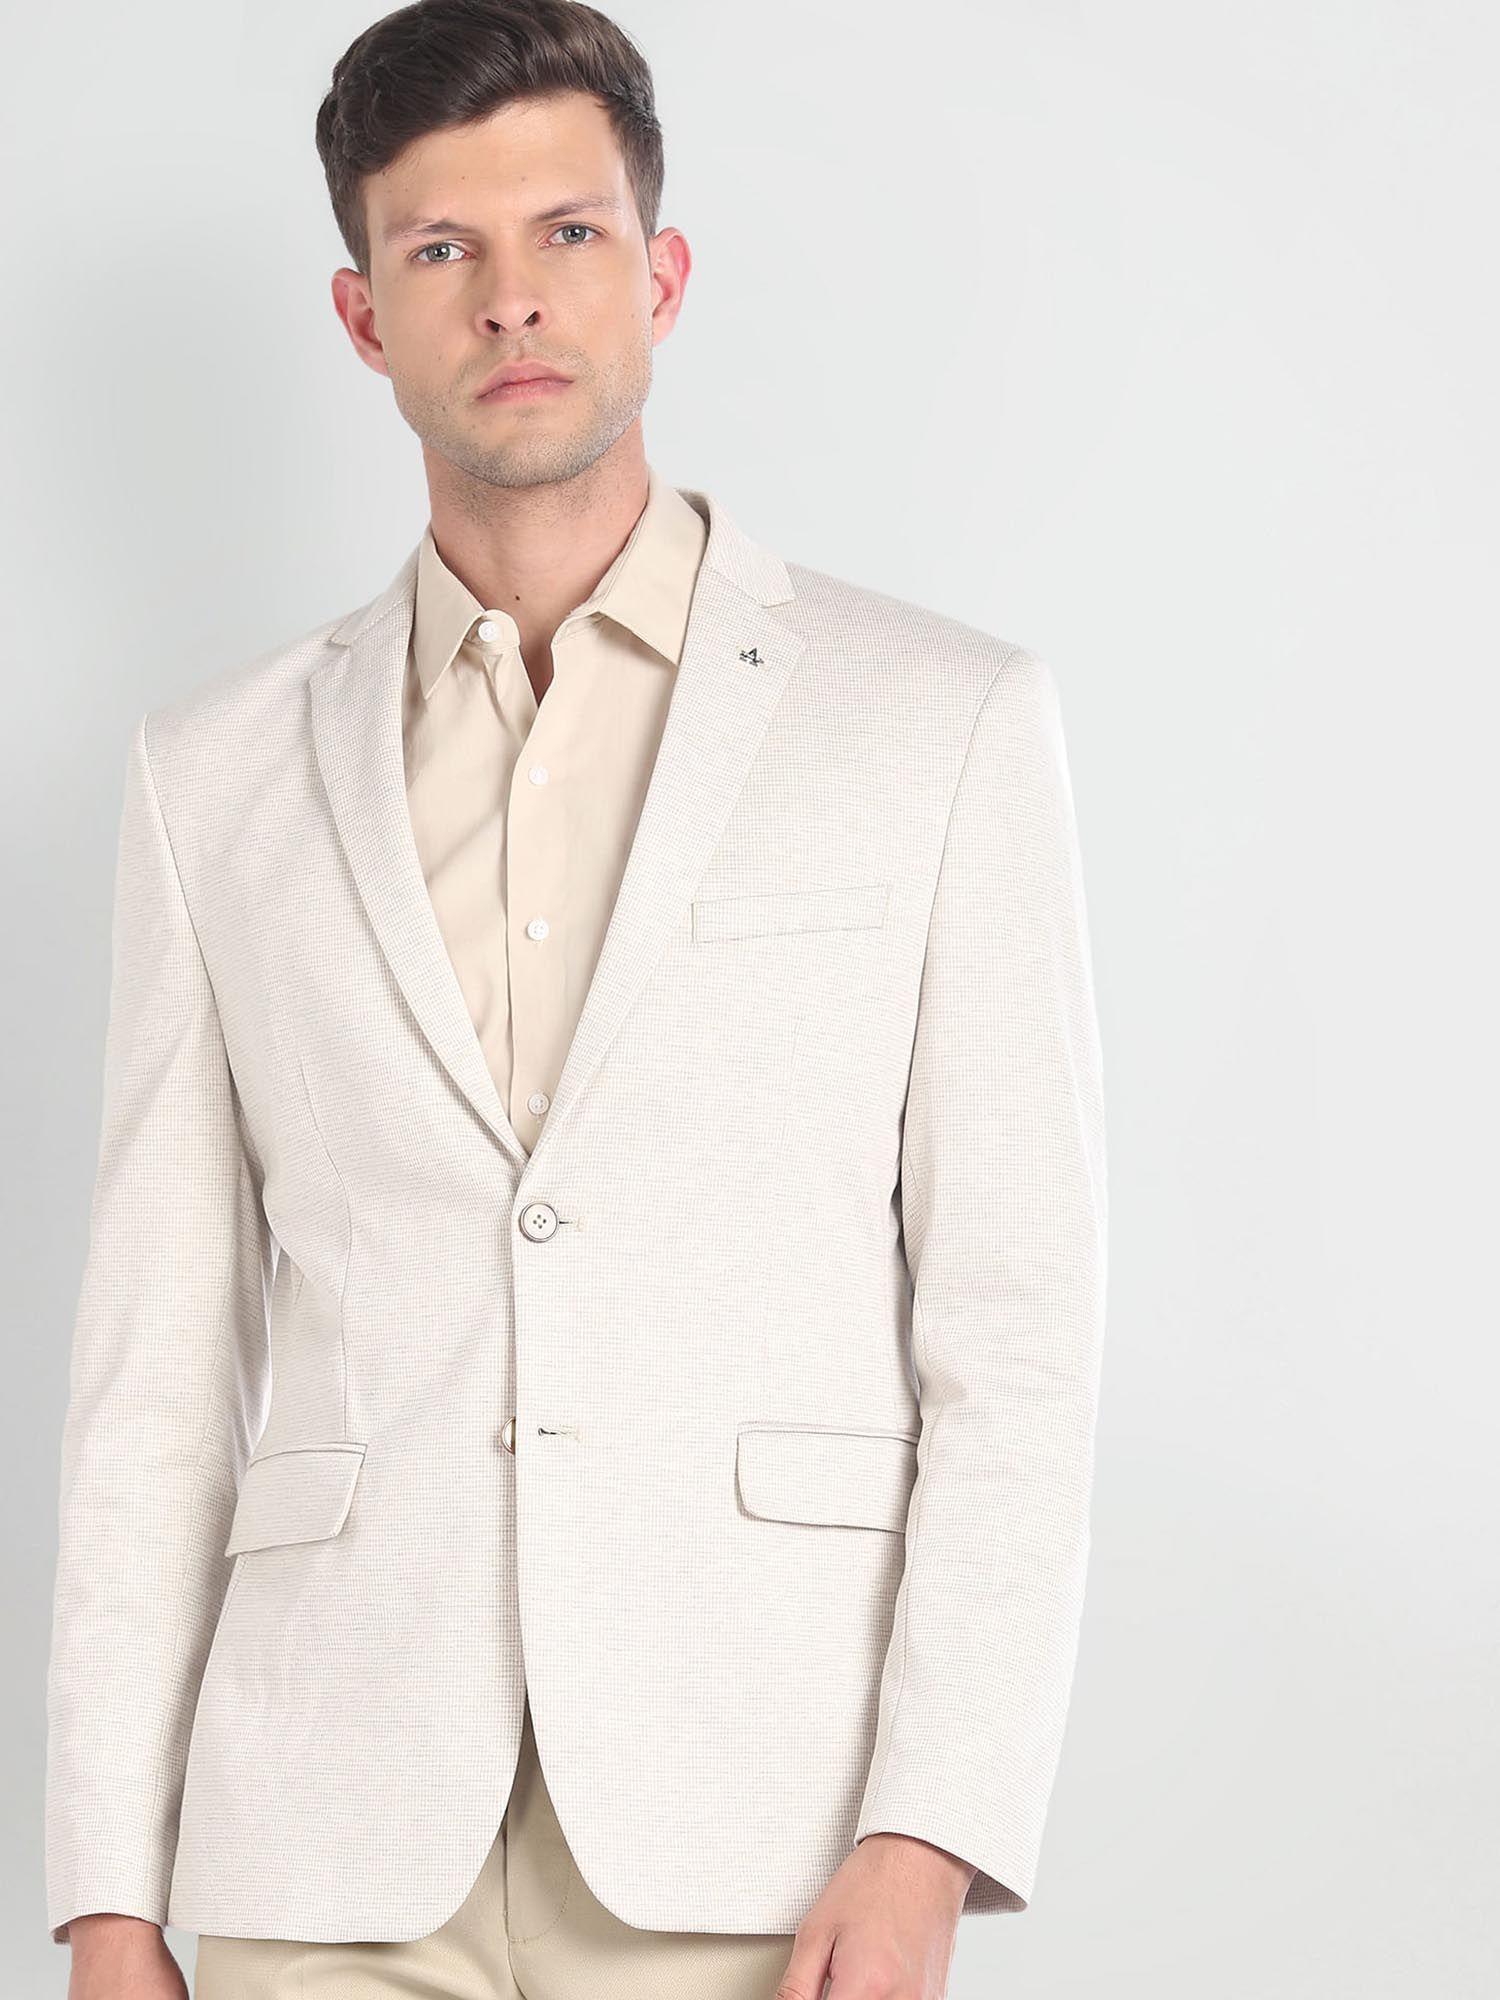 notch-lapel-collar-patterned-blazer